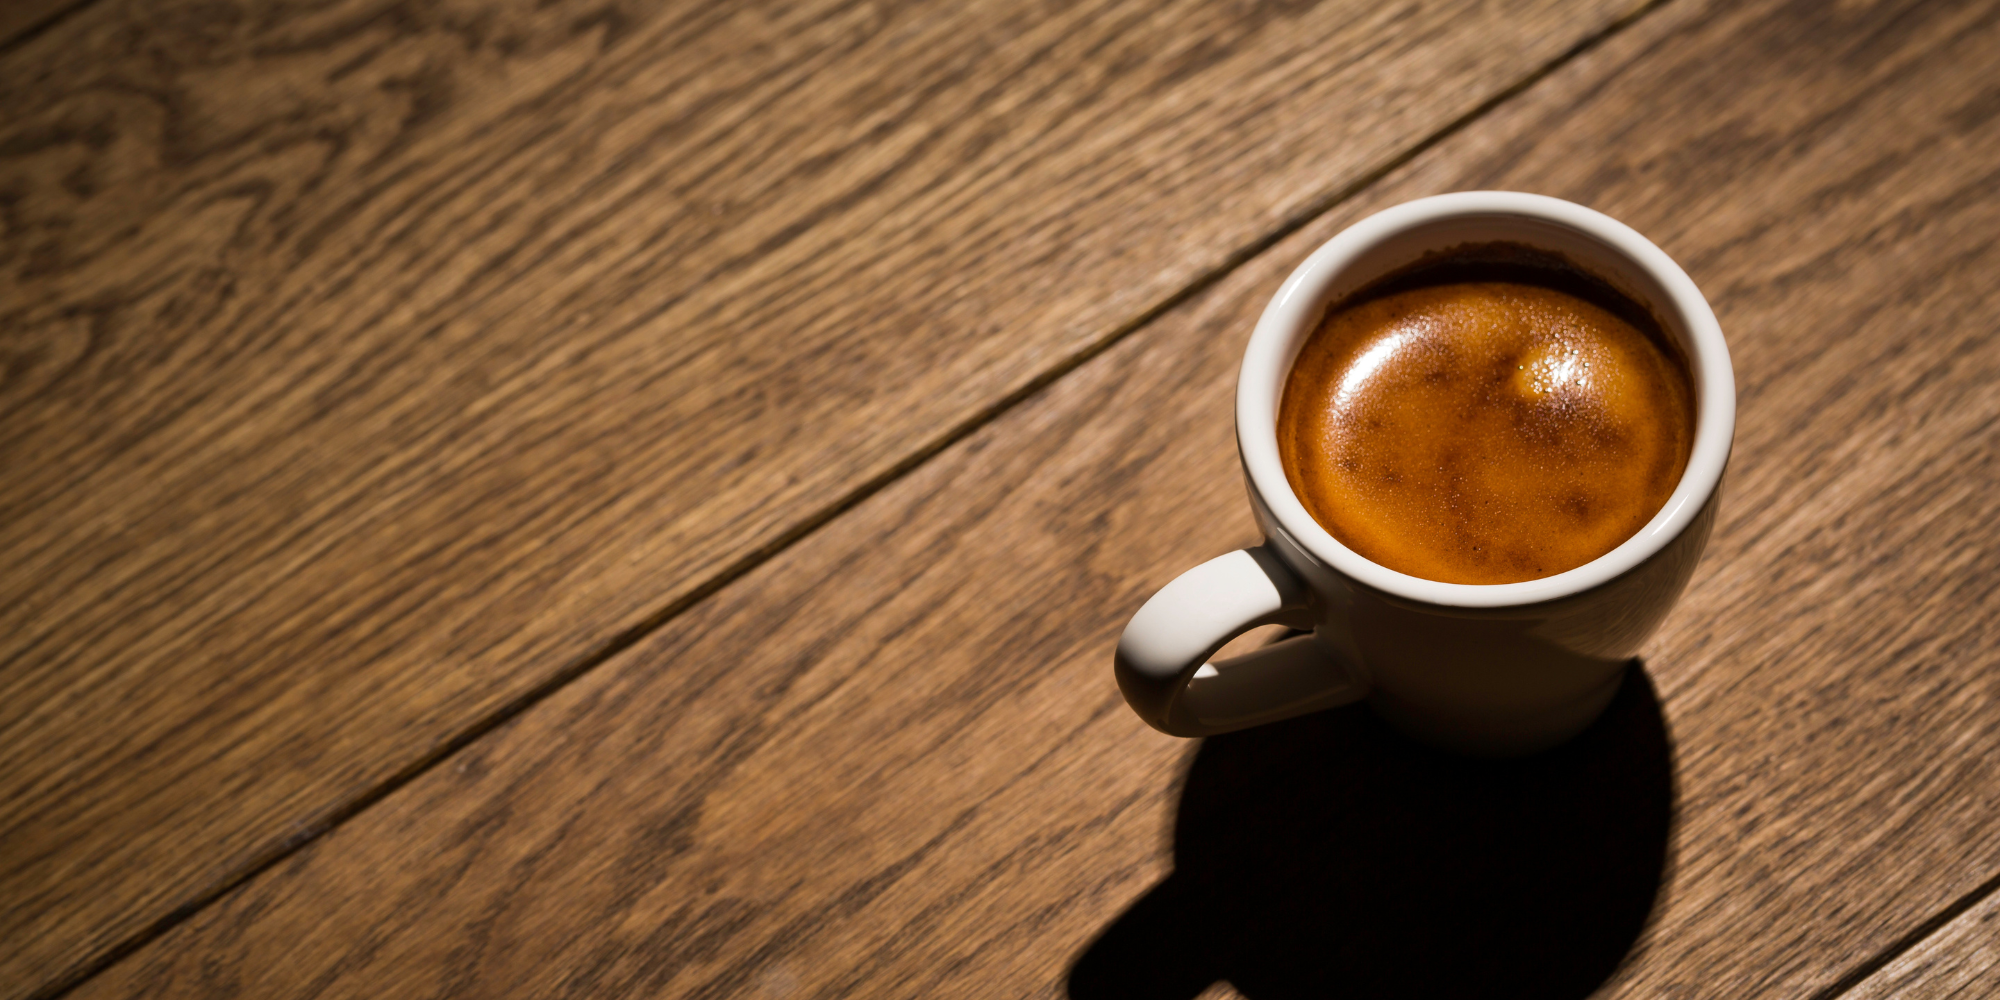 What Do You Do When Espresso Tastes Sour?